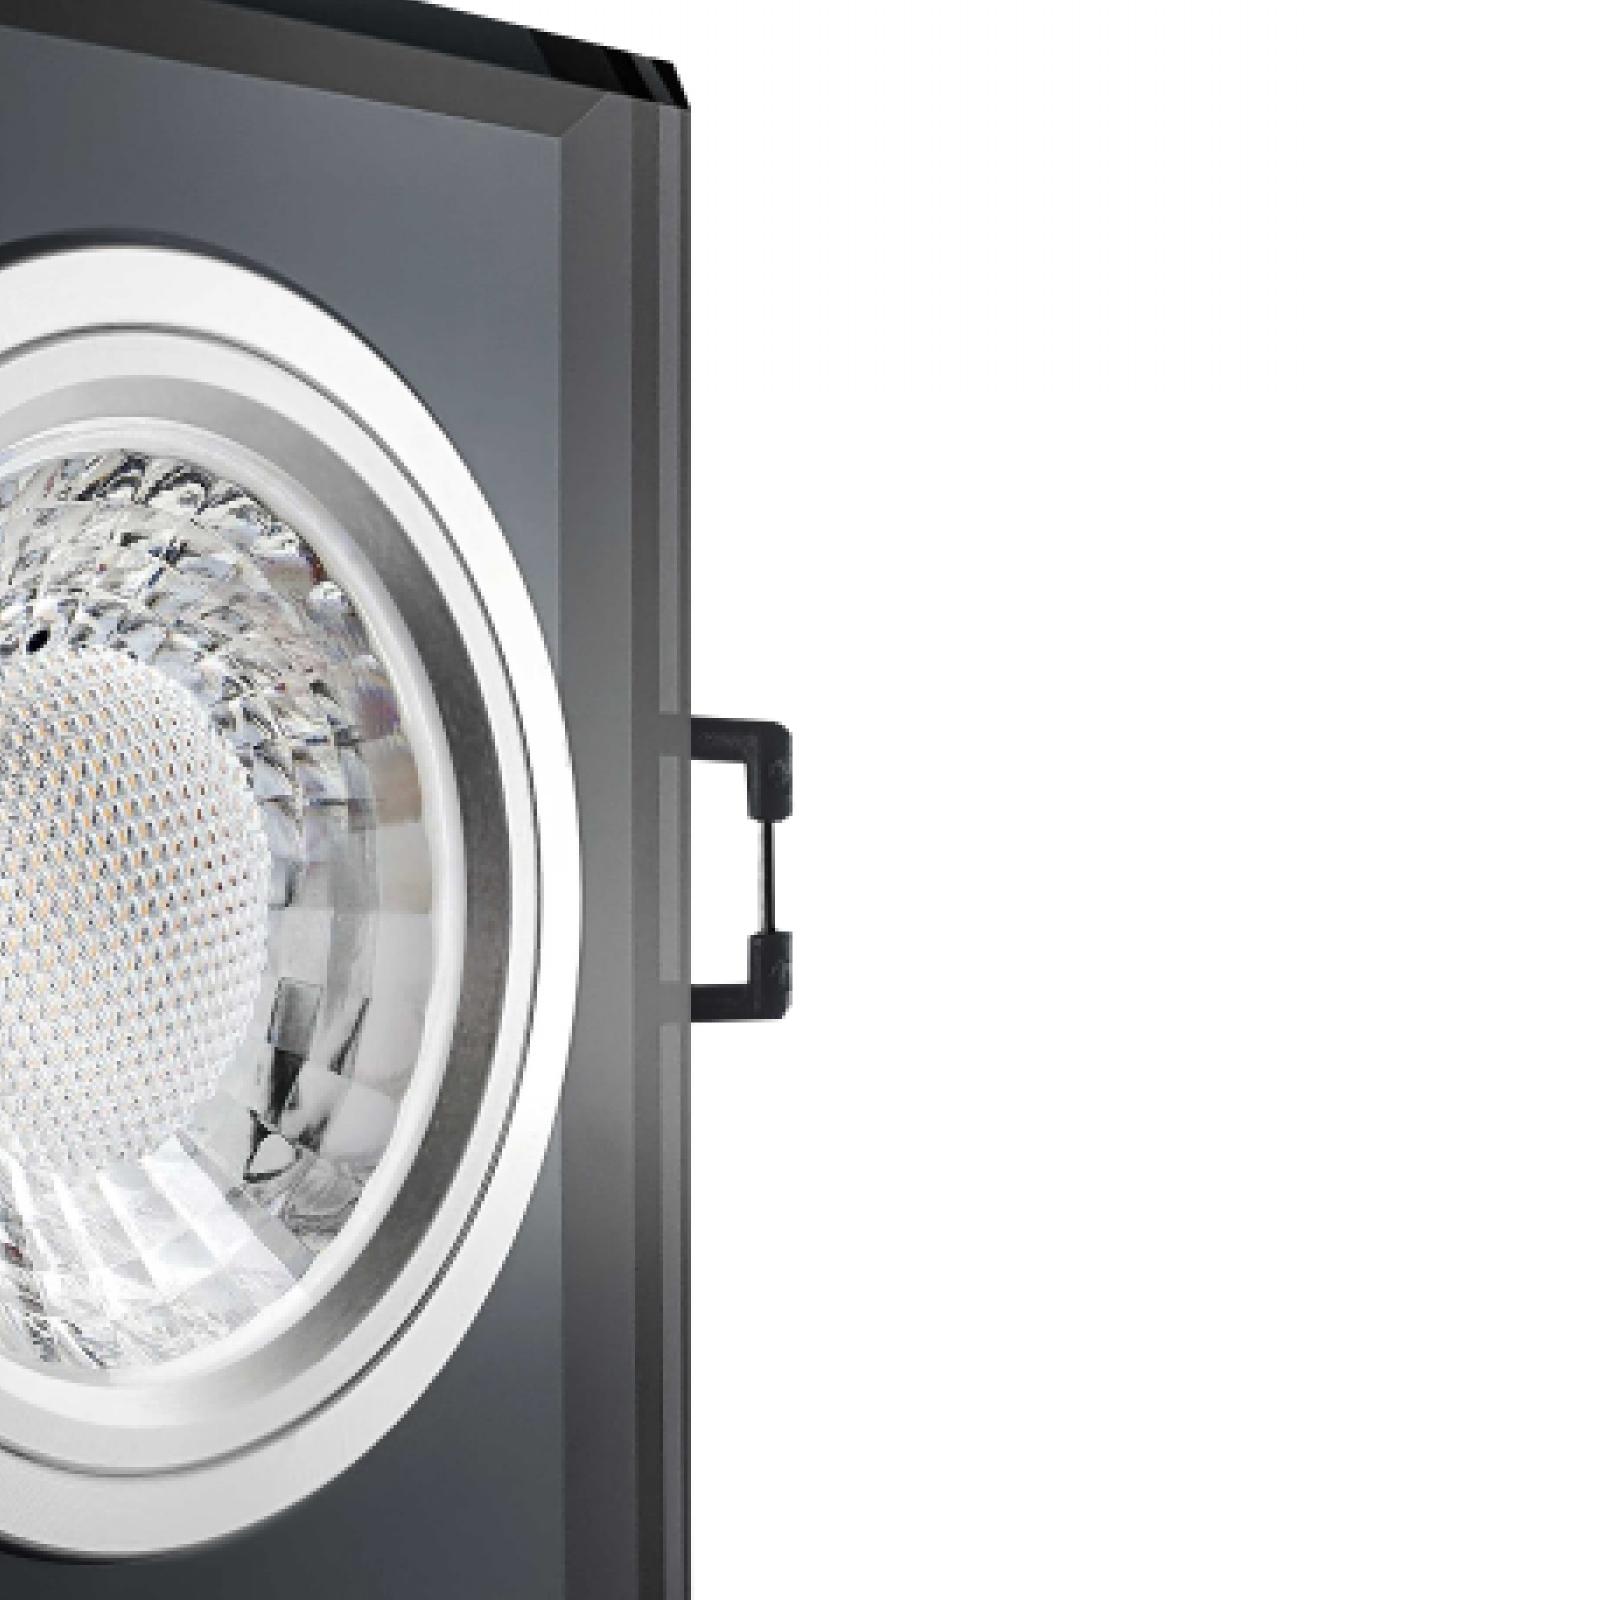 LED Einbaustrahler schwarz spiegelnd | Quadratischer Einbauspot Echtglas | Lochmaß Ø 68mm - 80mm | geringe Einbautiefe 24mm | Anschlussfertig 